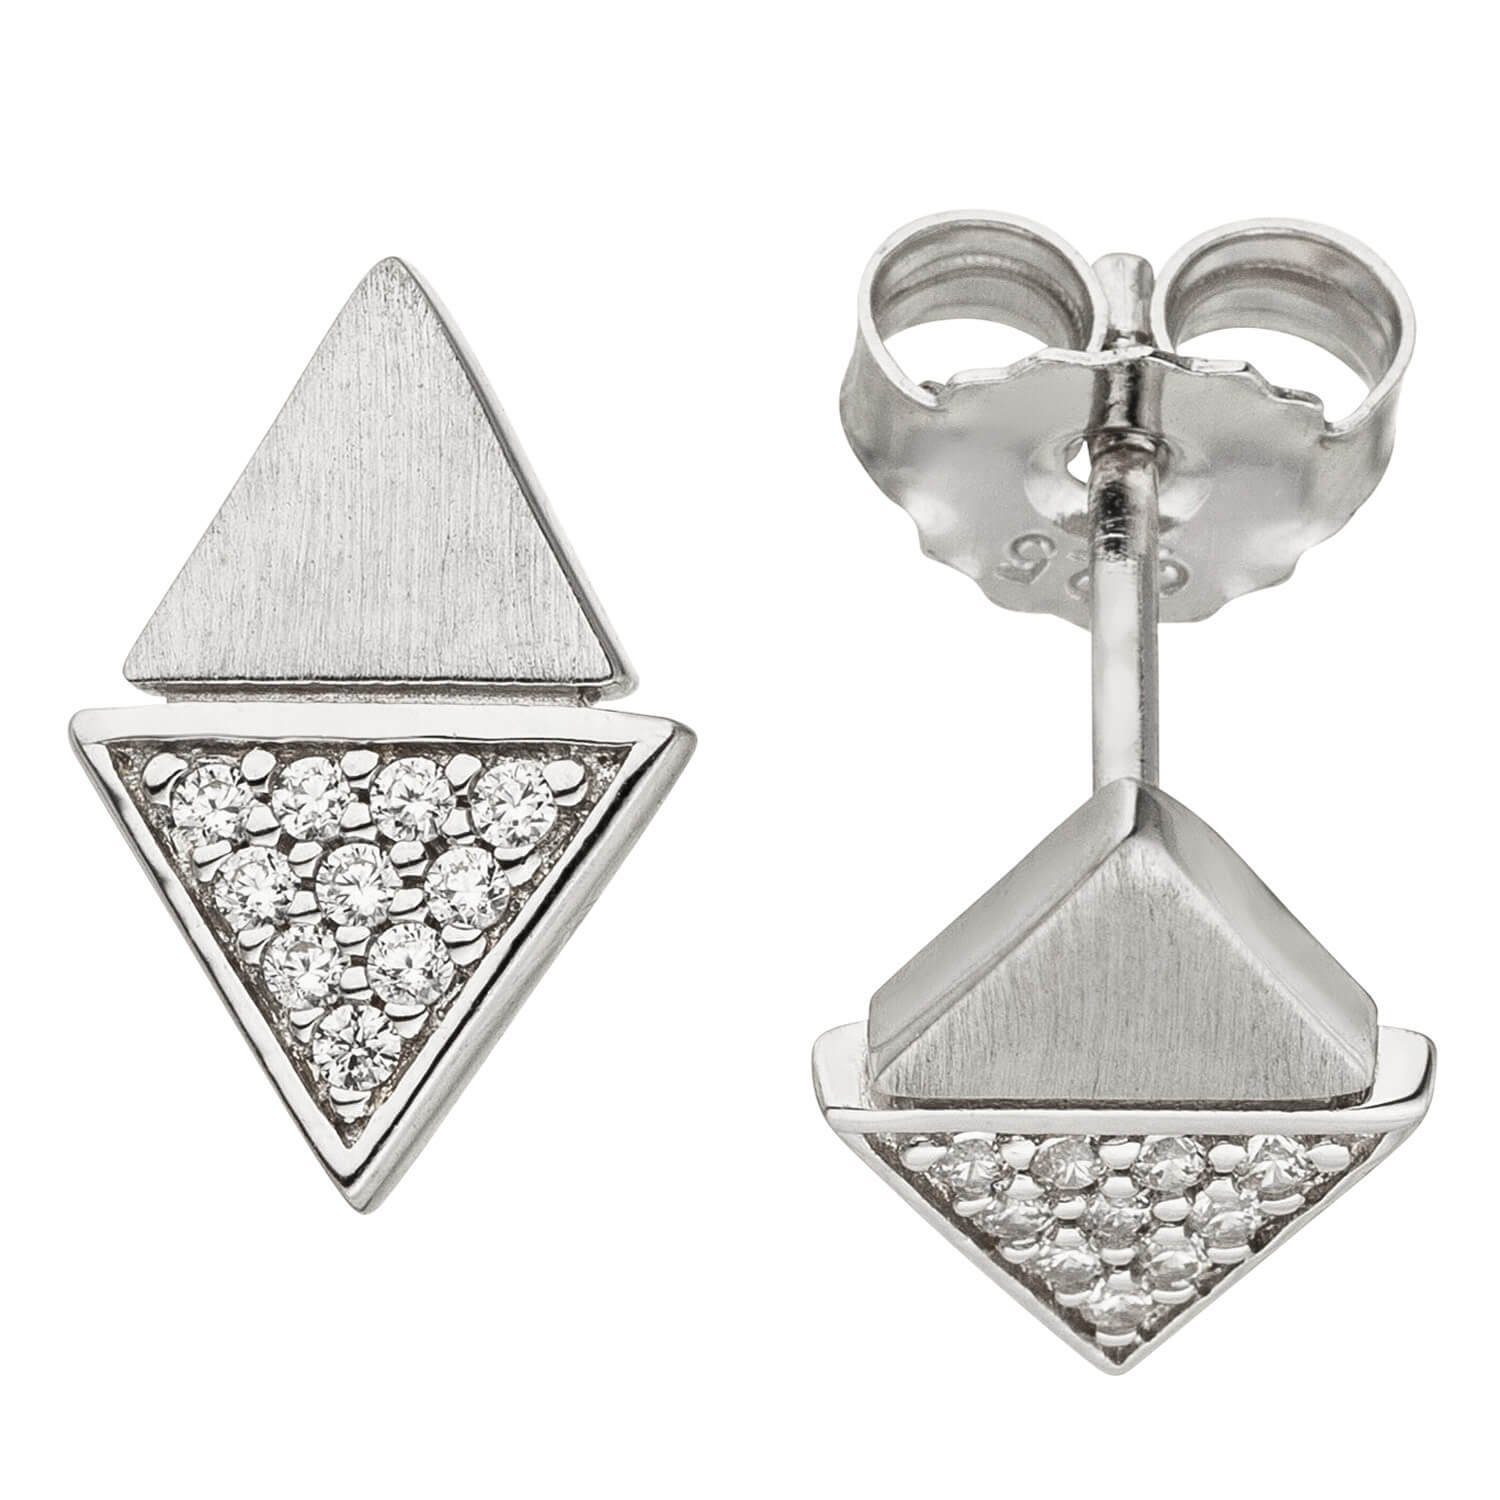 Schmuck Krone Paar Ohrstecker Ohrstecker Ohrringe Dreiecke mit weißen Zirkonia, 925 Silber rhodiniert teilmatt, Silber 925